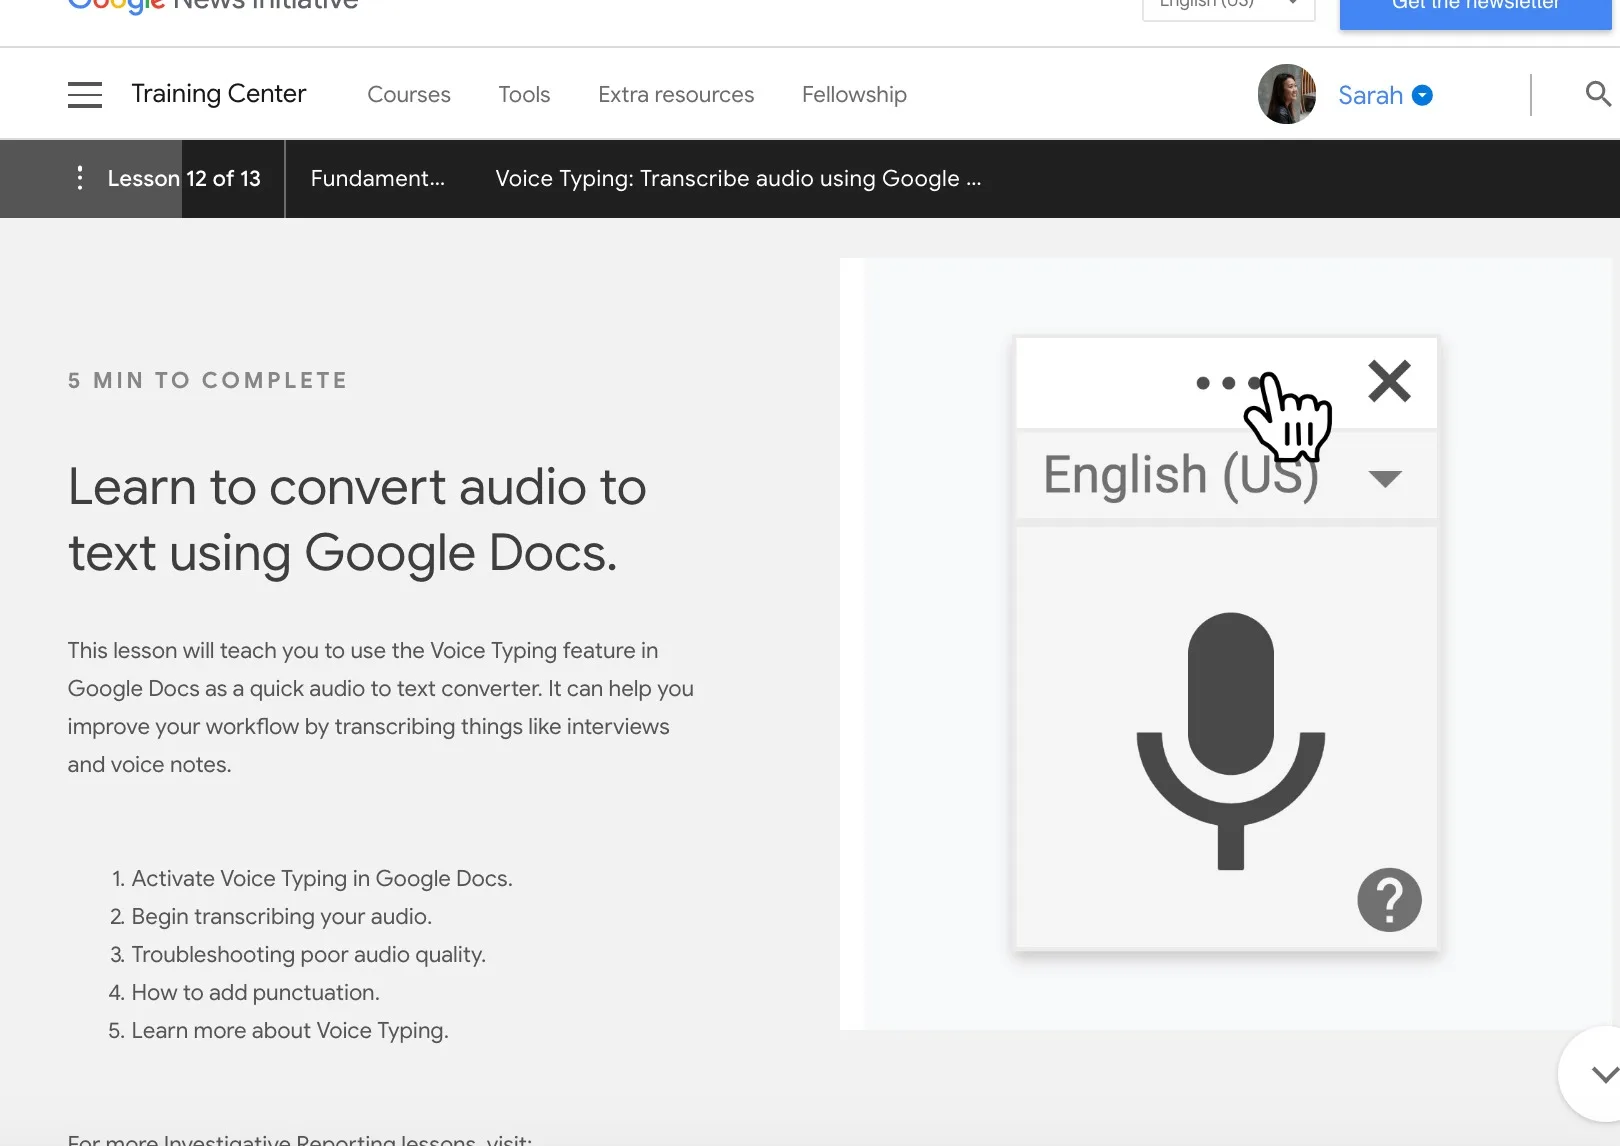 Google Docs et Slides : La saisie vocale arrive sur Safari et Edge